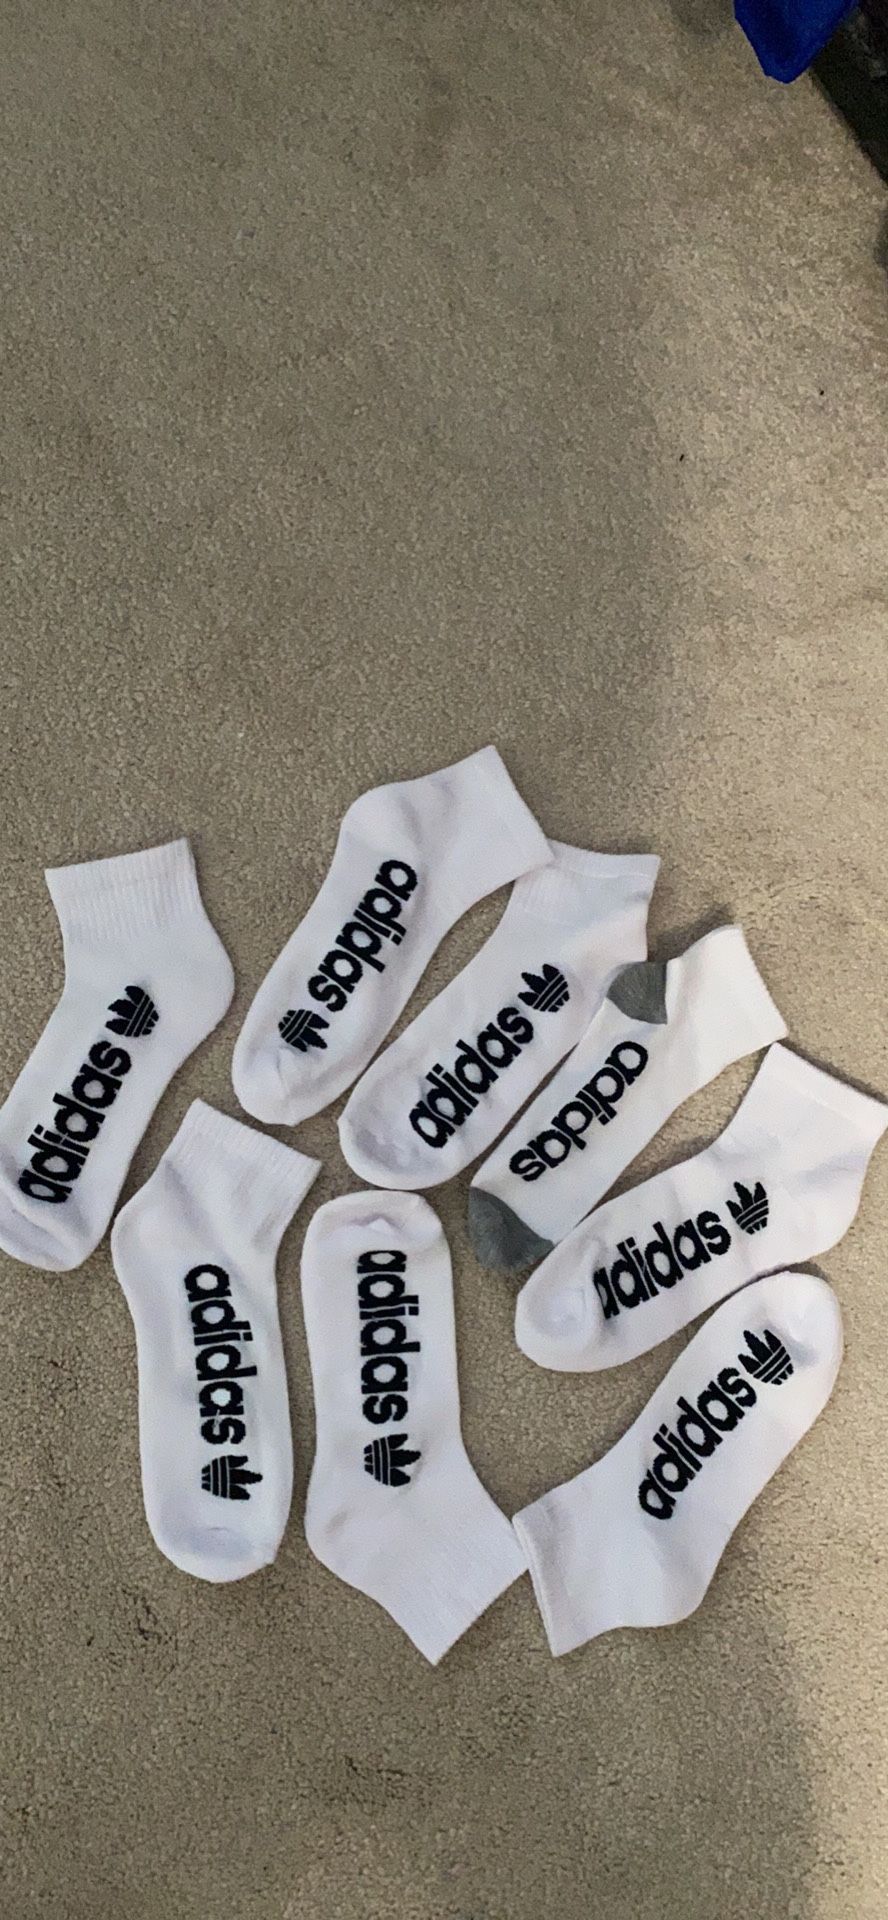 new adidas men’s socks unisex pck